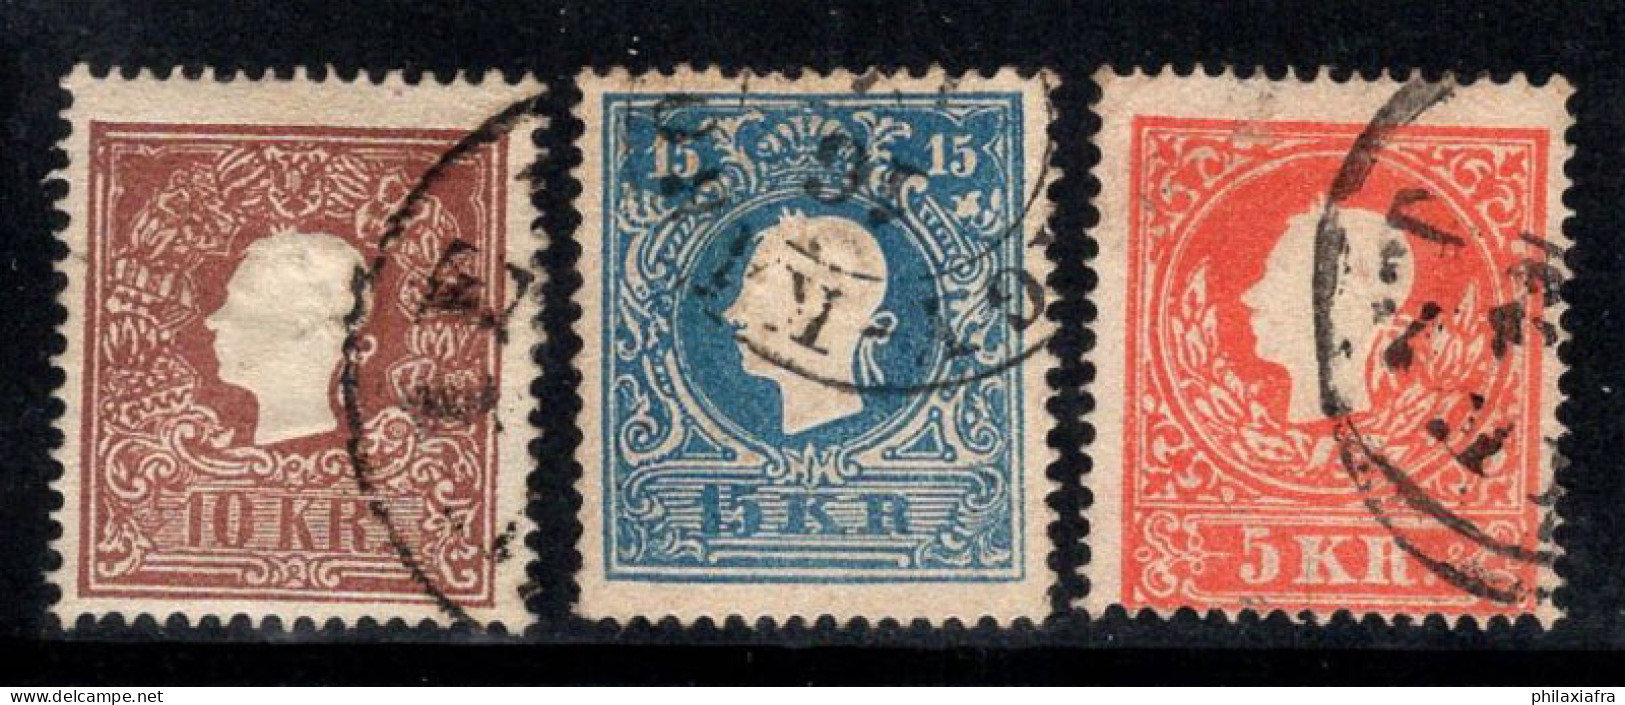 Autriche 1858 Mi. 13 II-15 II Oblitéré 100% François-Joseph - Used Stamps